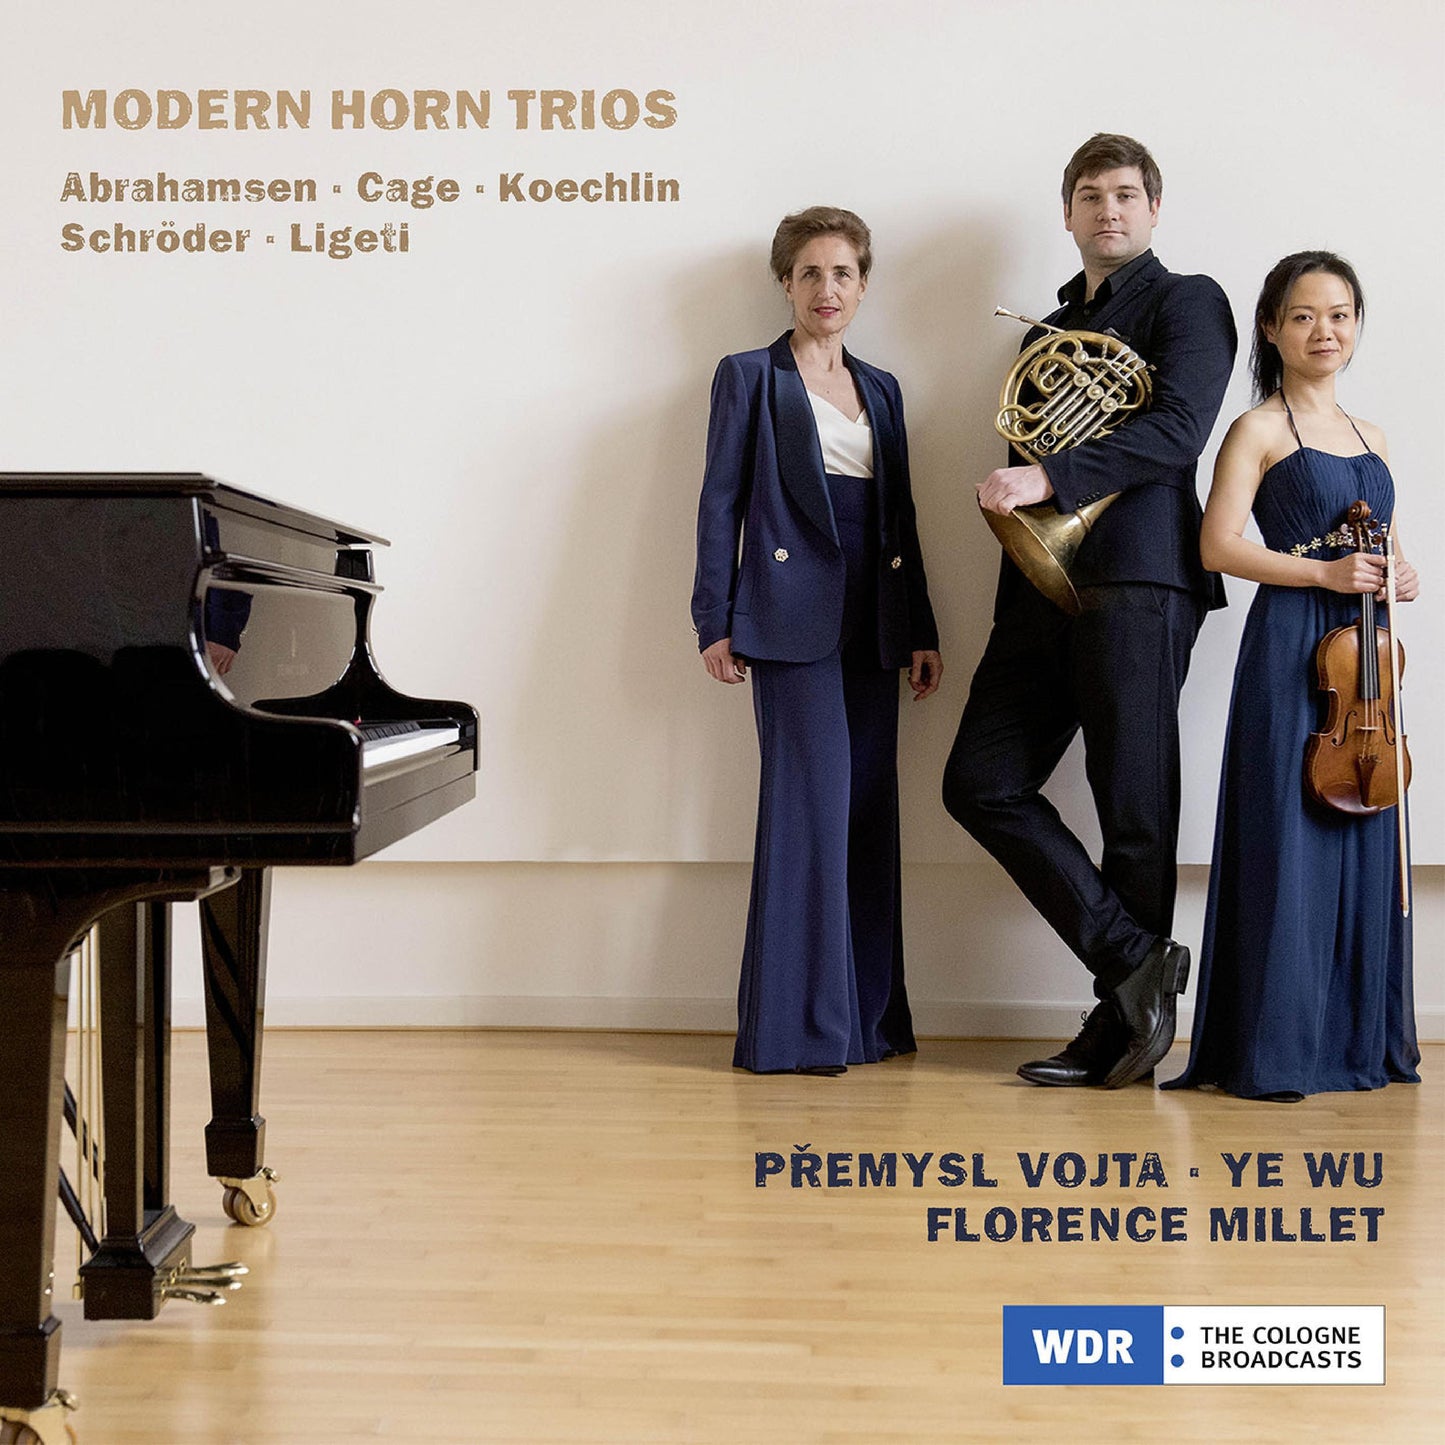 Abrahamsen, Cage, Koechlin, Ligeti & Schroeder: Modern Horn